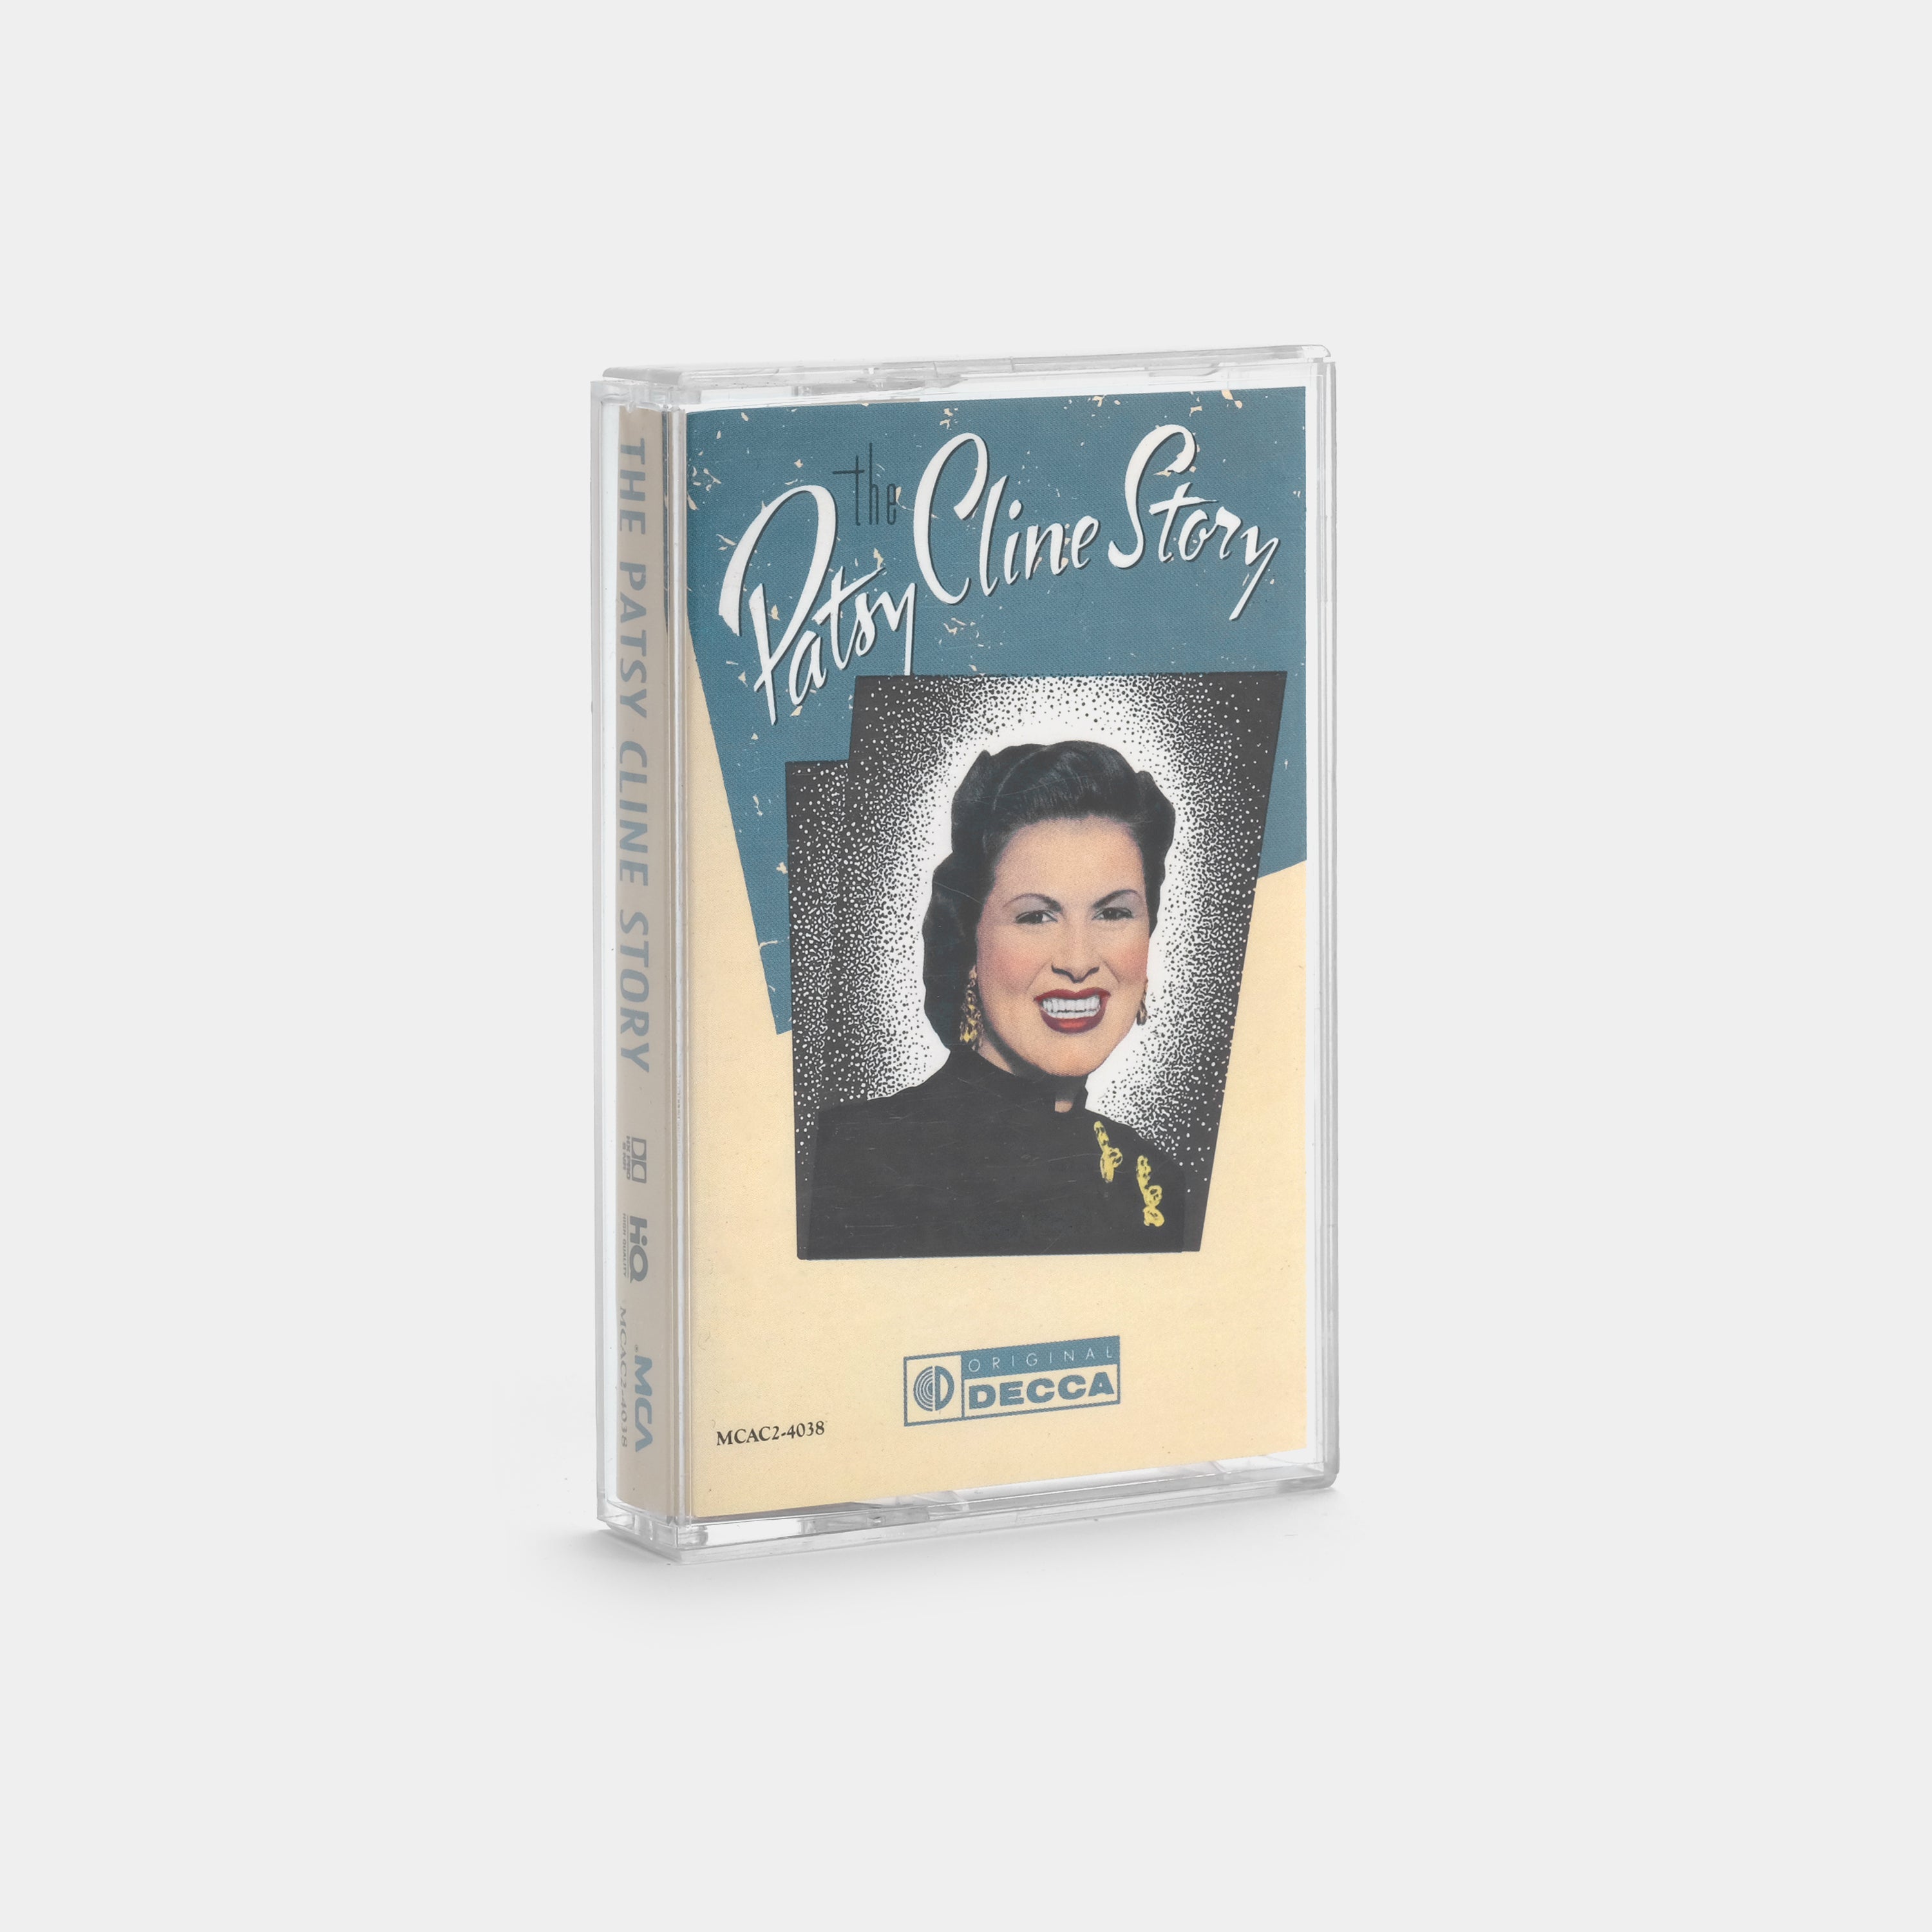 Patsy Cline - The Patsy Cline Story Cassette Tape